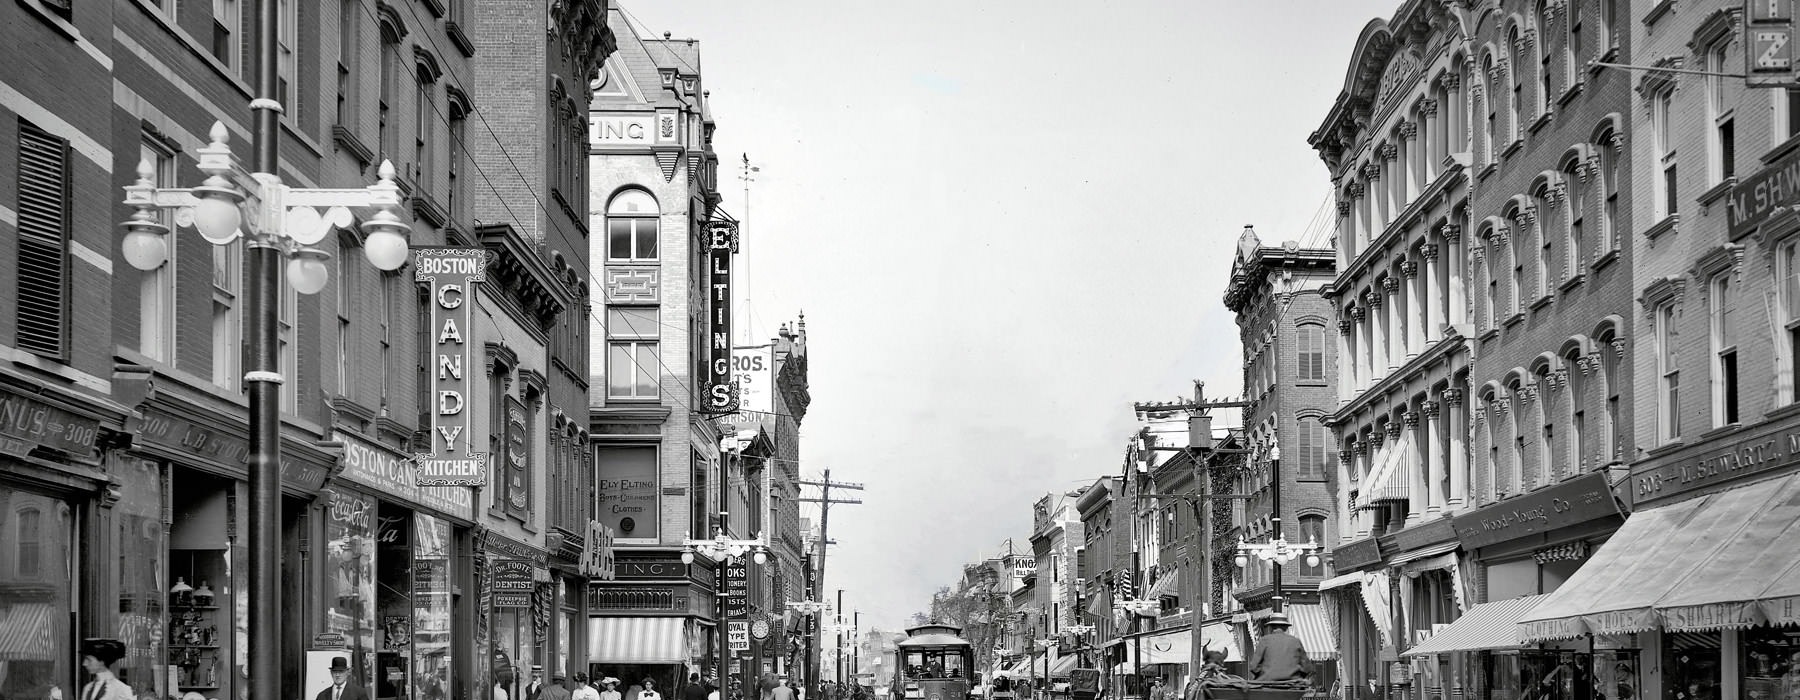 old, black and white photo of downtown Poughkeepsie